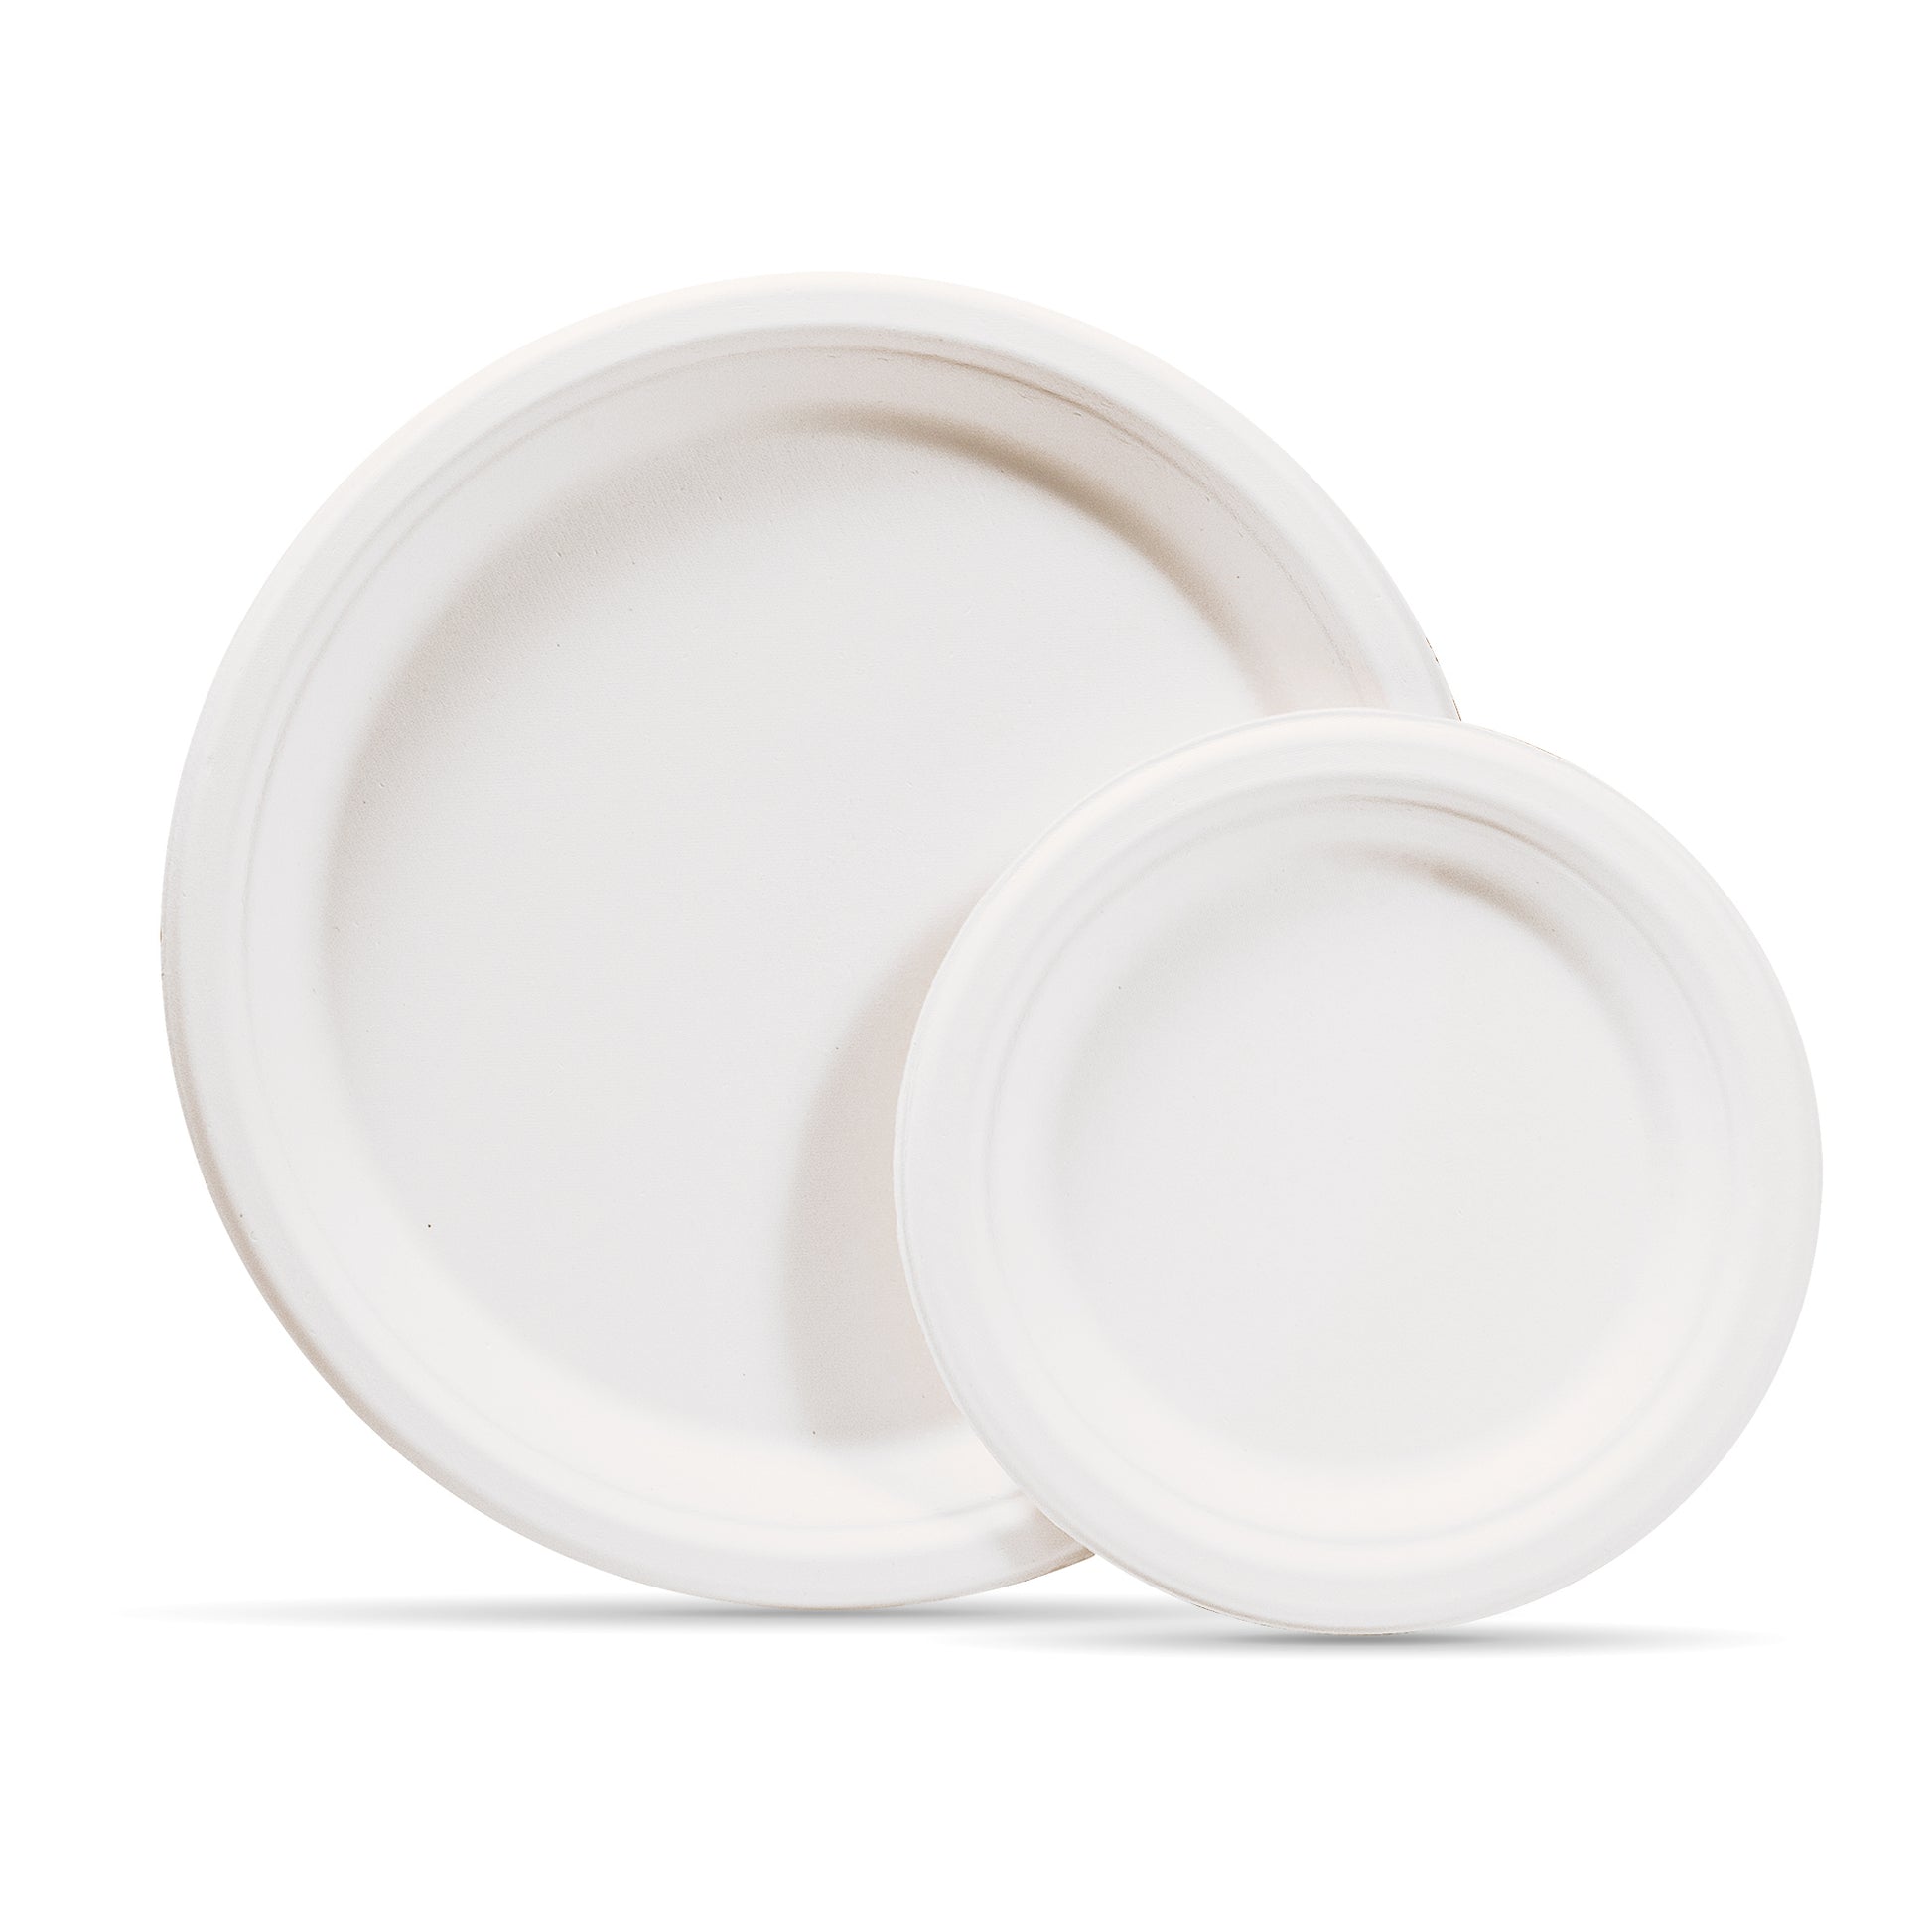 100 Pcs Compostable Disposable Round Paper Plates, Biodegradable  Eco-Friendly Sugarcane Plates